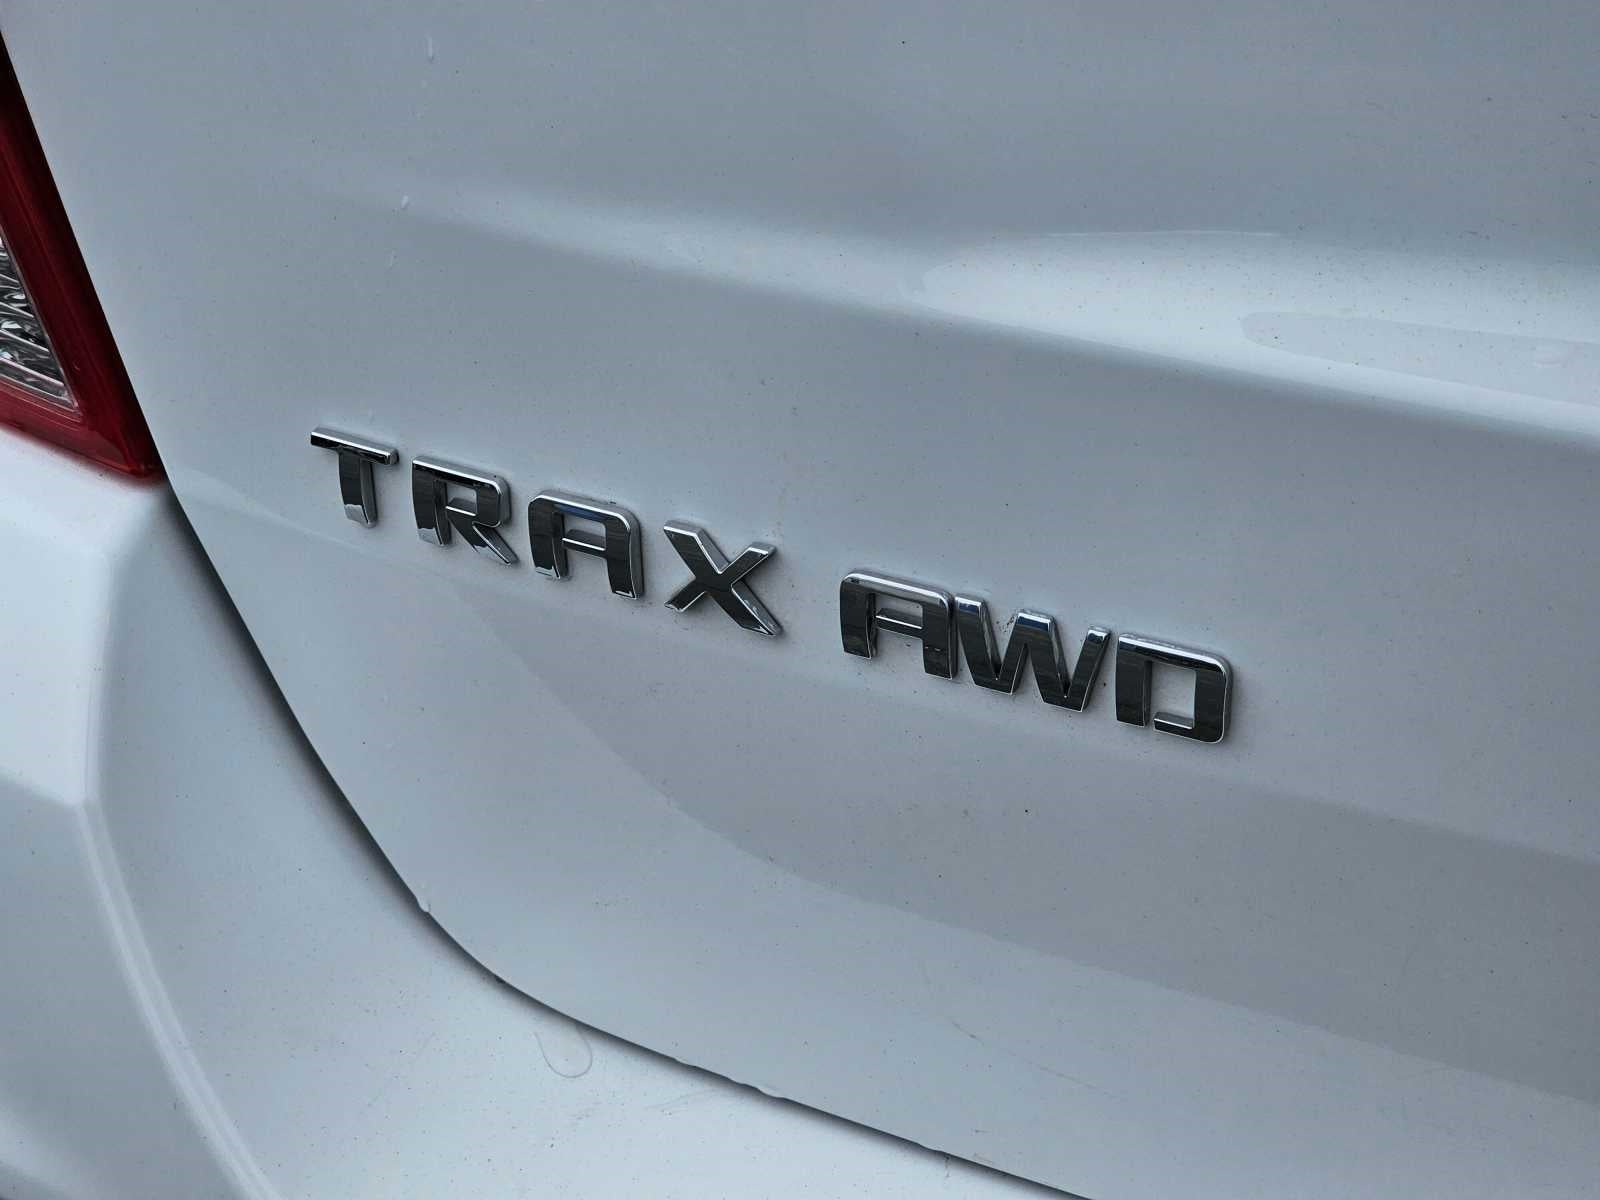 2017 Chevrolet Trax LS